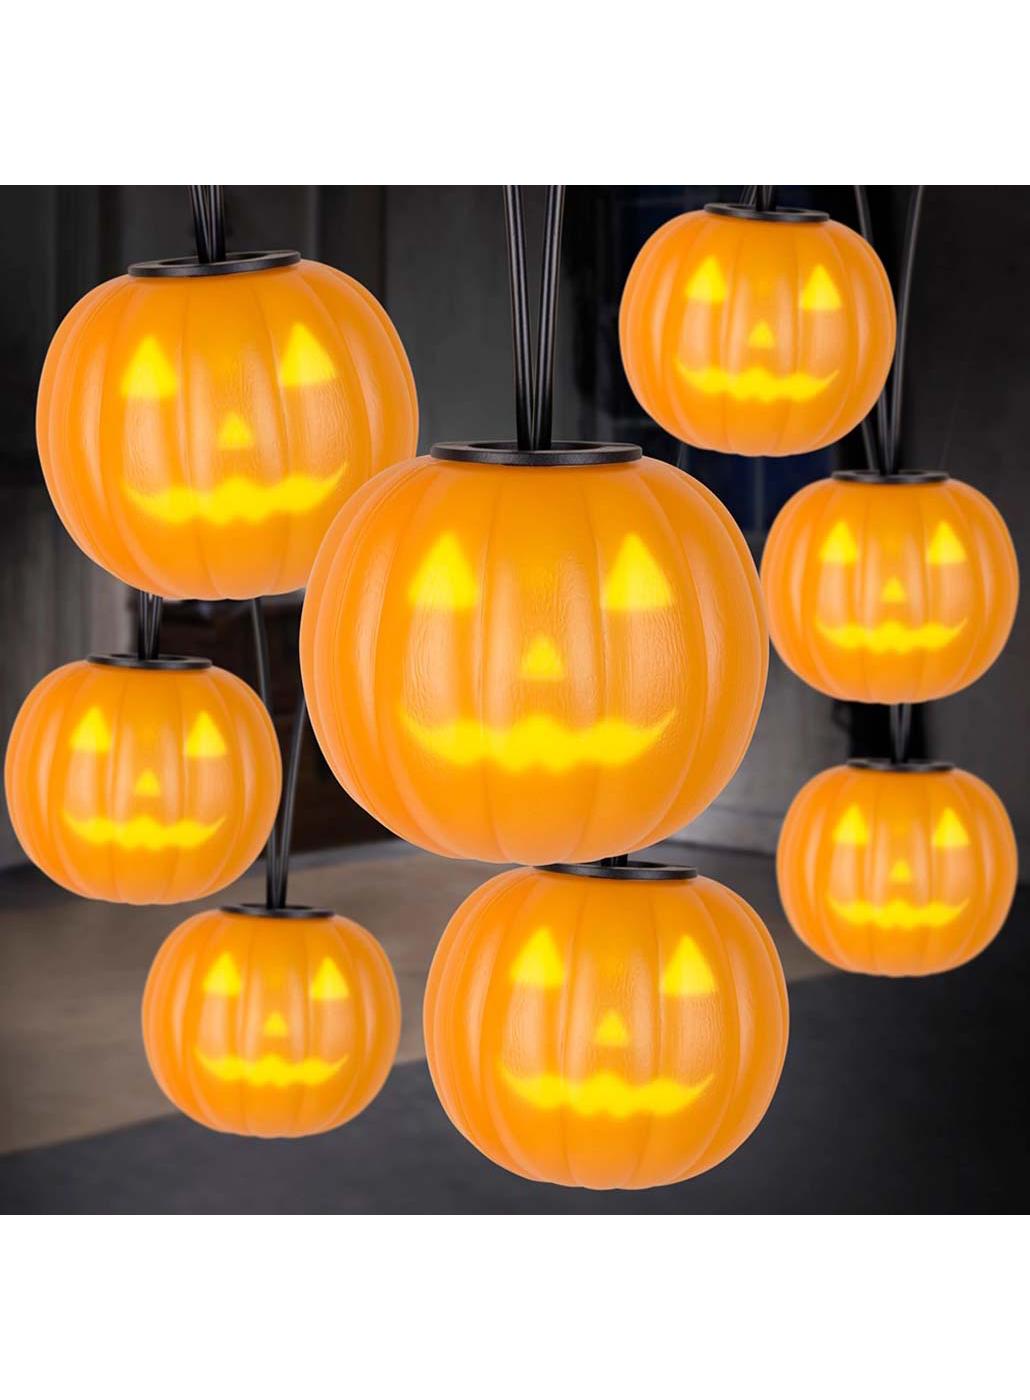 Gemmy Spooky Moods Musical Jack-O-Lanterns String Lights - Shop ...